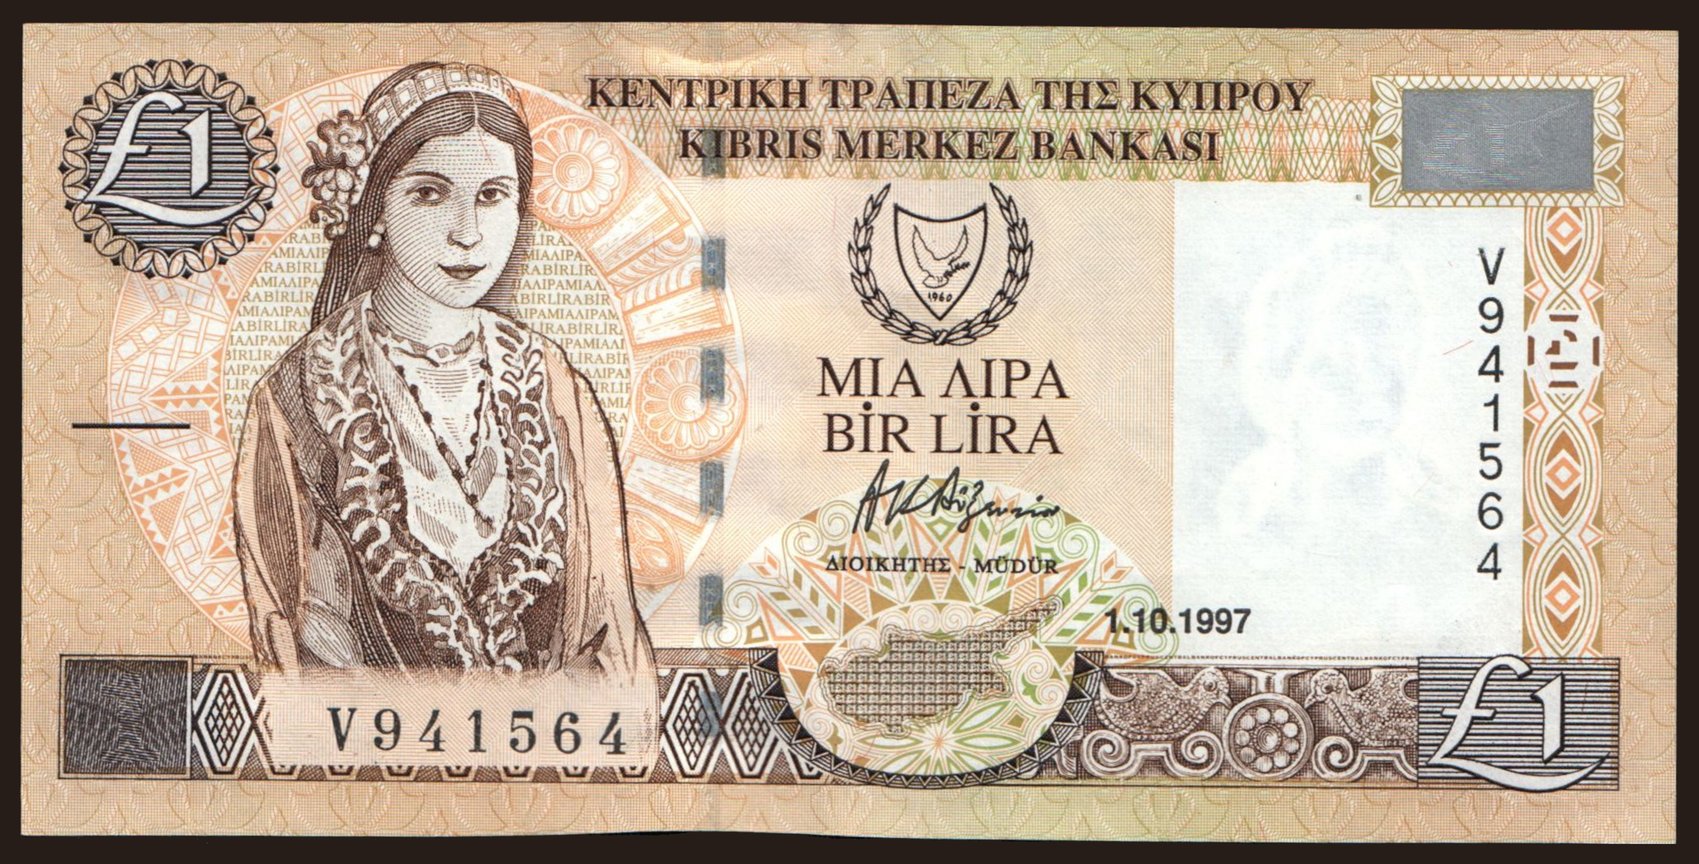 1 pound, 1997